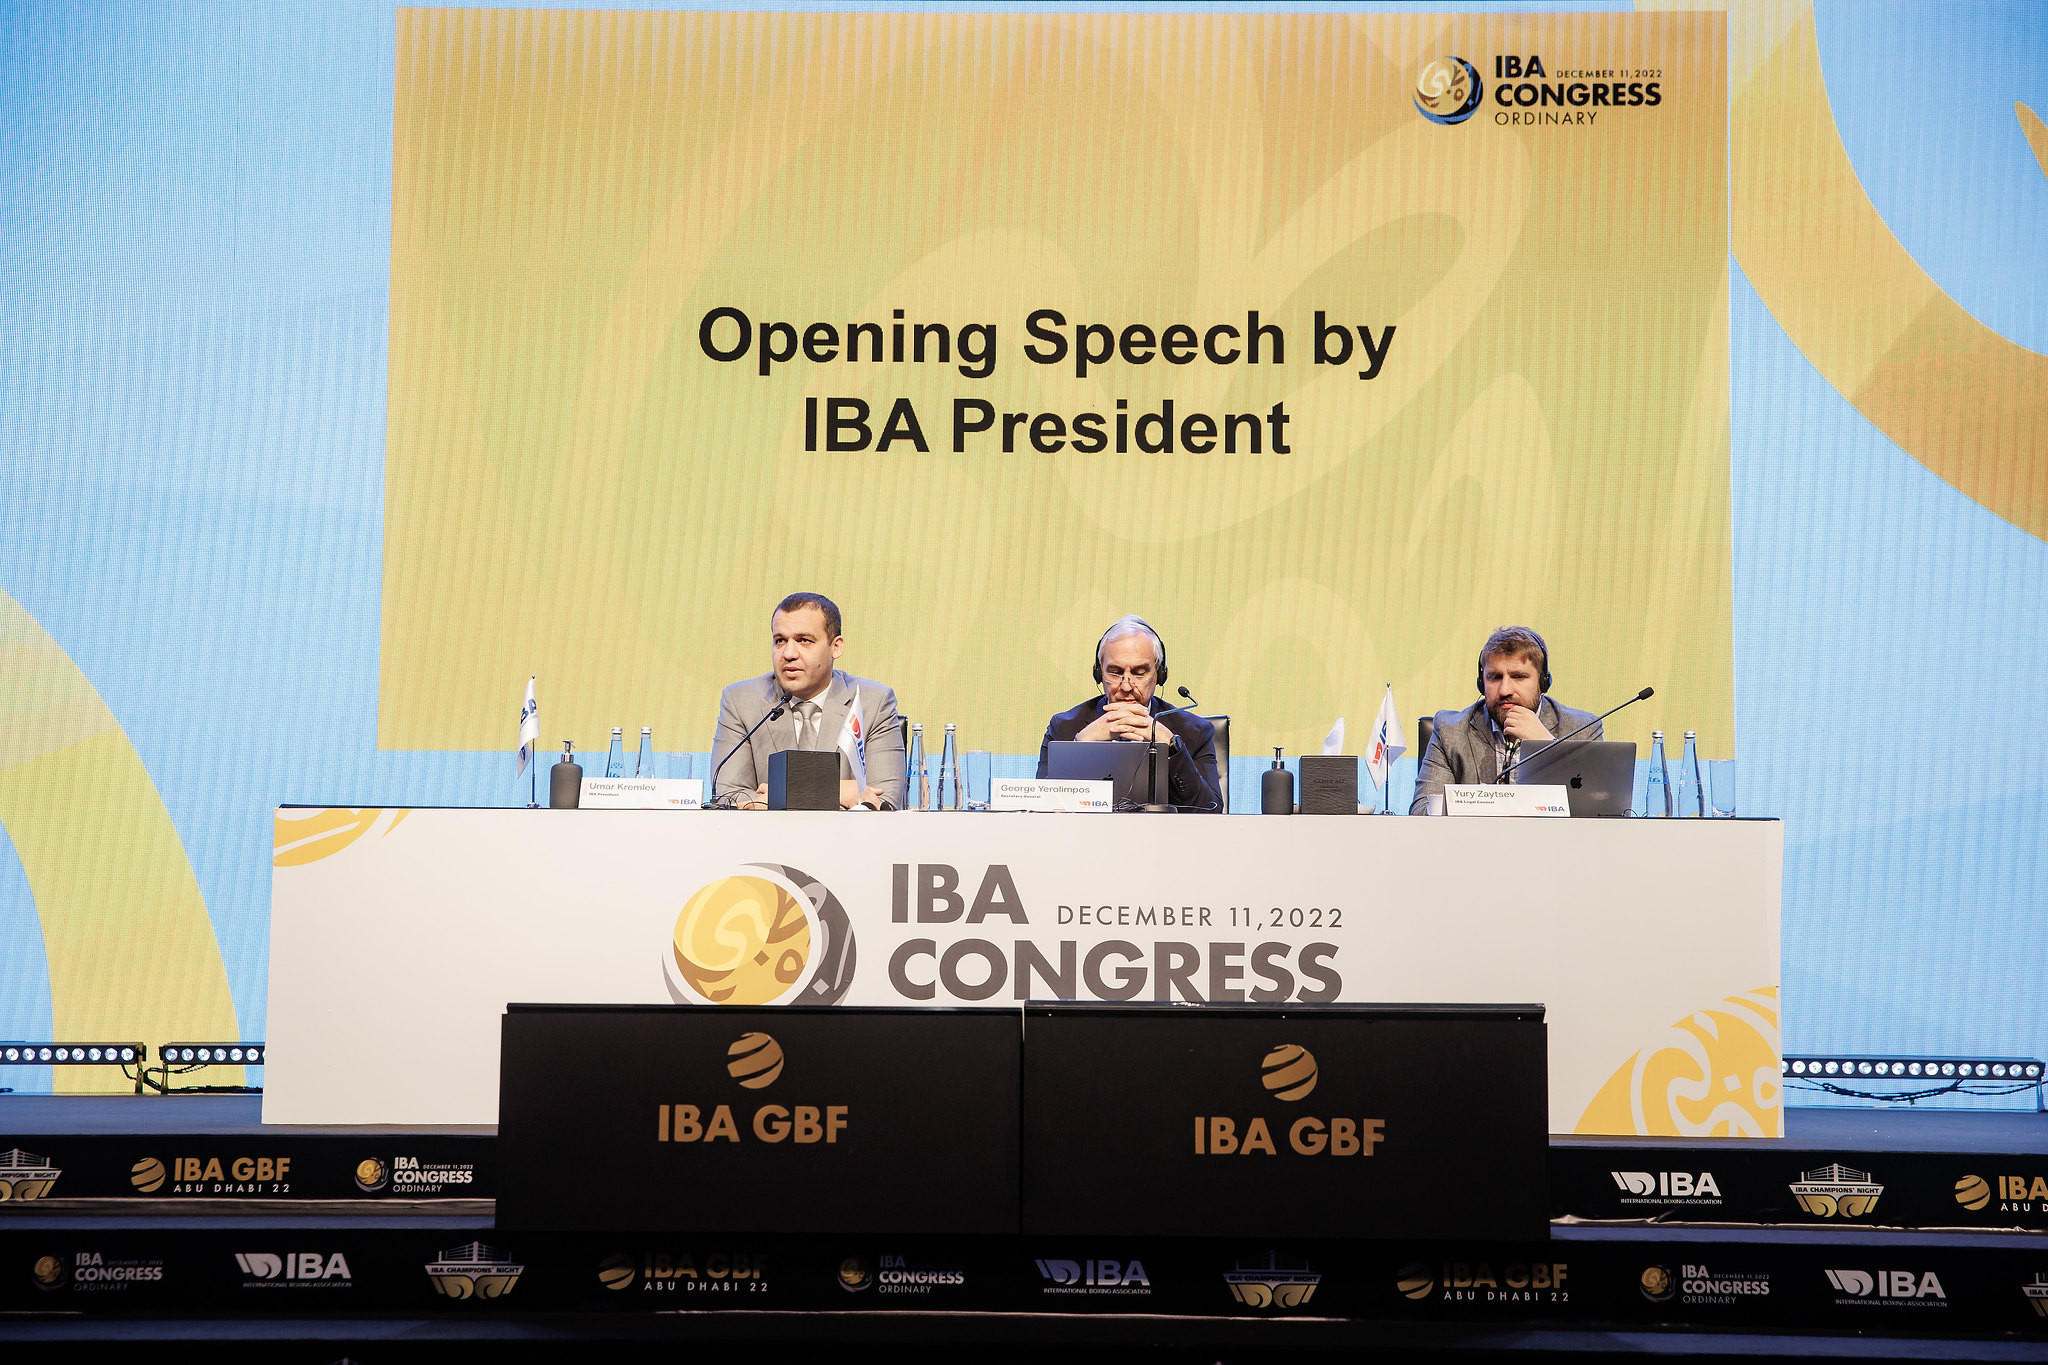 IBA President Umar Kremlev speaks during last year's Ordinary Congress in Abu Dhabi ©Flickr/IBA